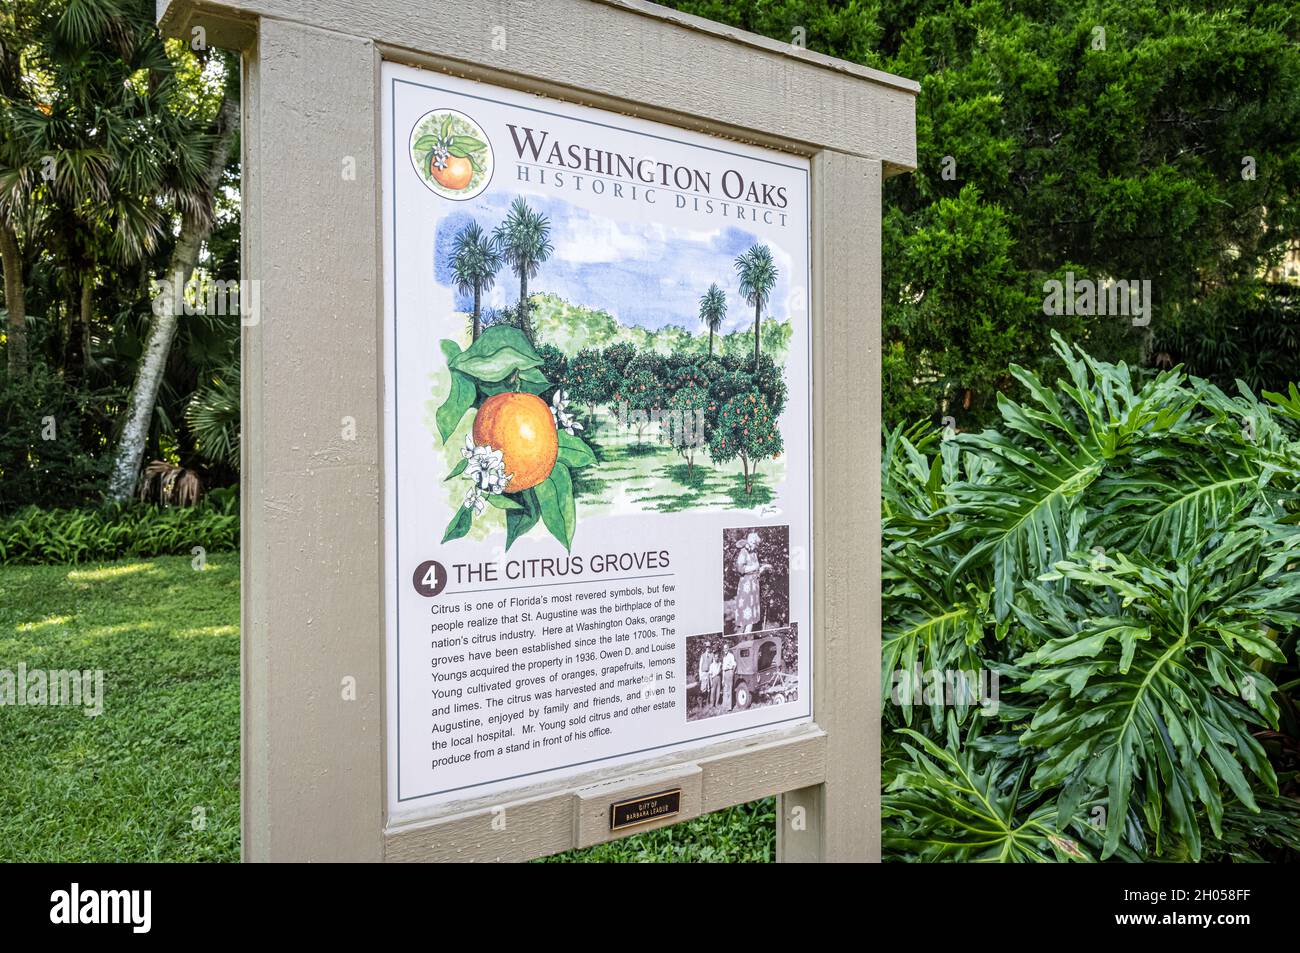 Señalización para el área de Citrus Groves del Distrito Histórico Washington Oaks en el Parque Estatal Washington Oaks Gardens en Palm Coast, Florida. (EE. UU.) Foto de stock